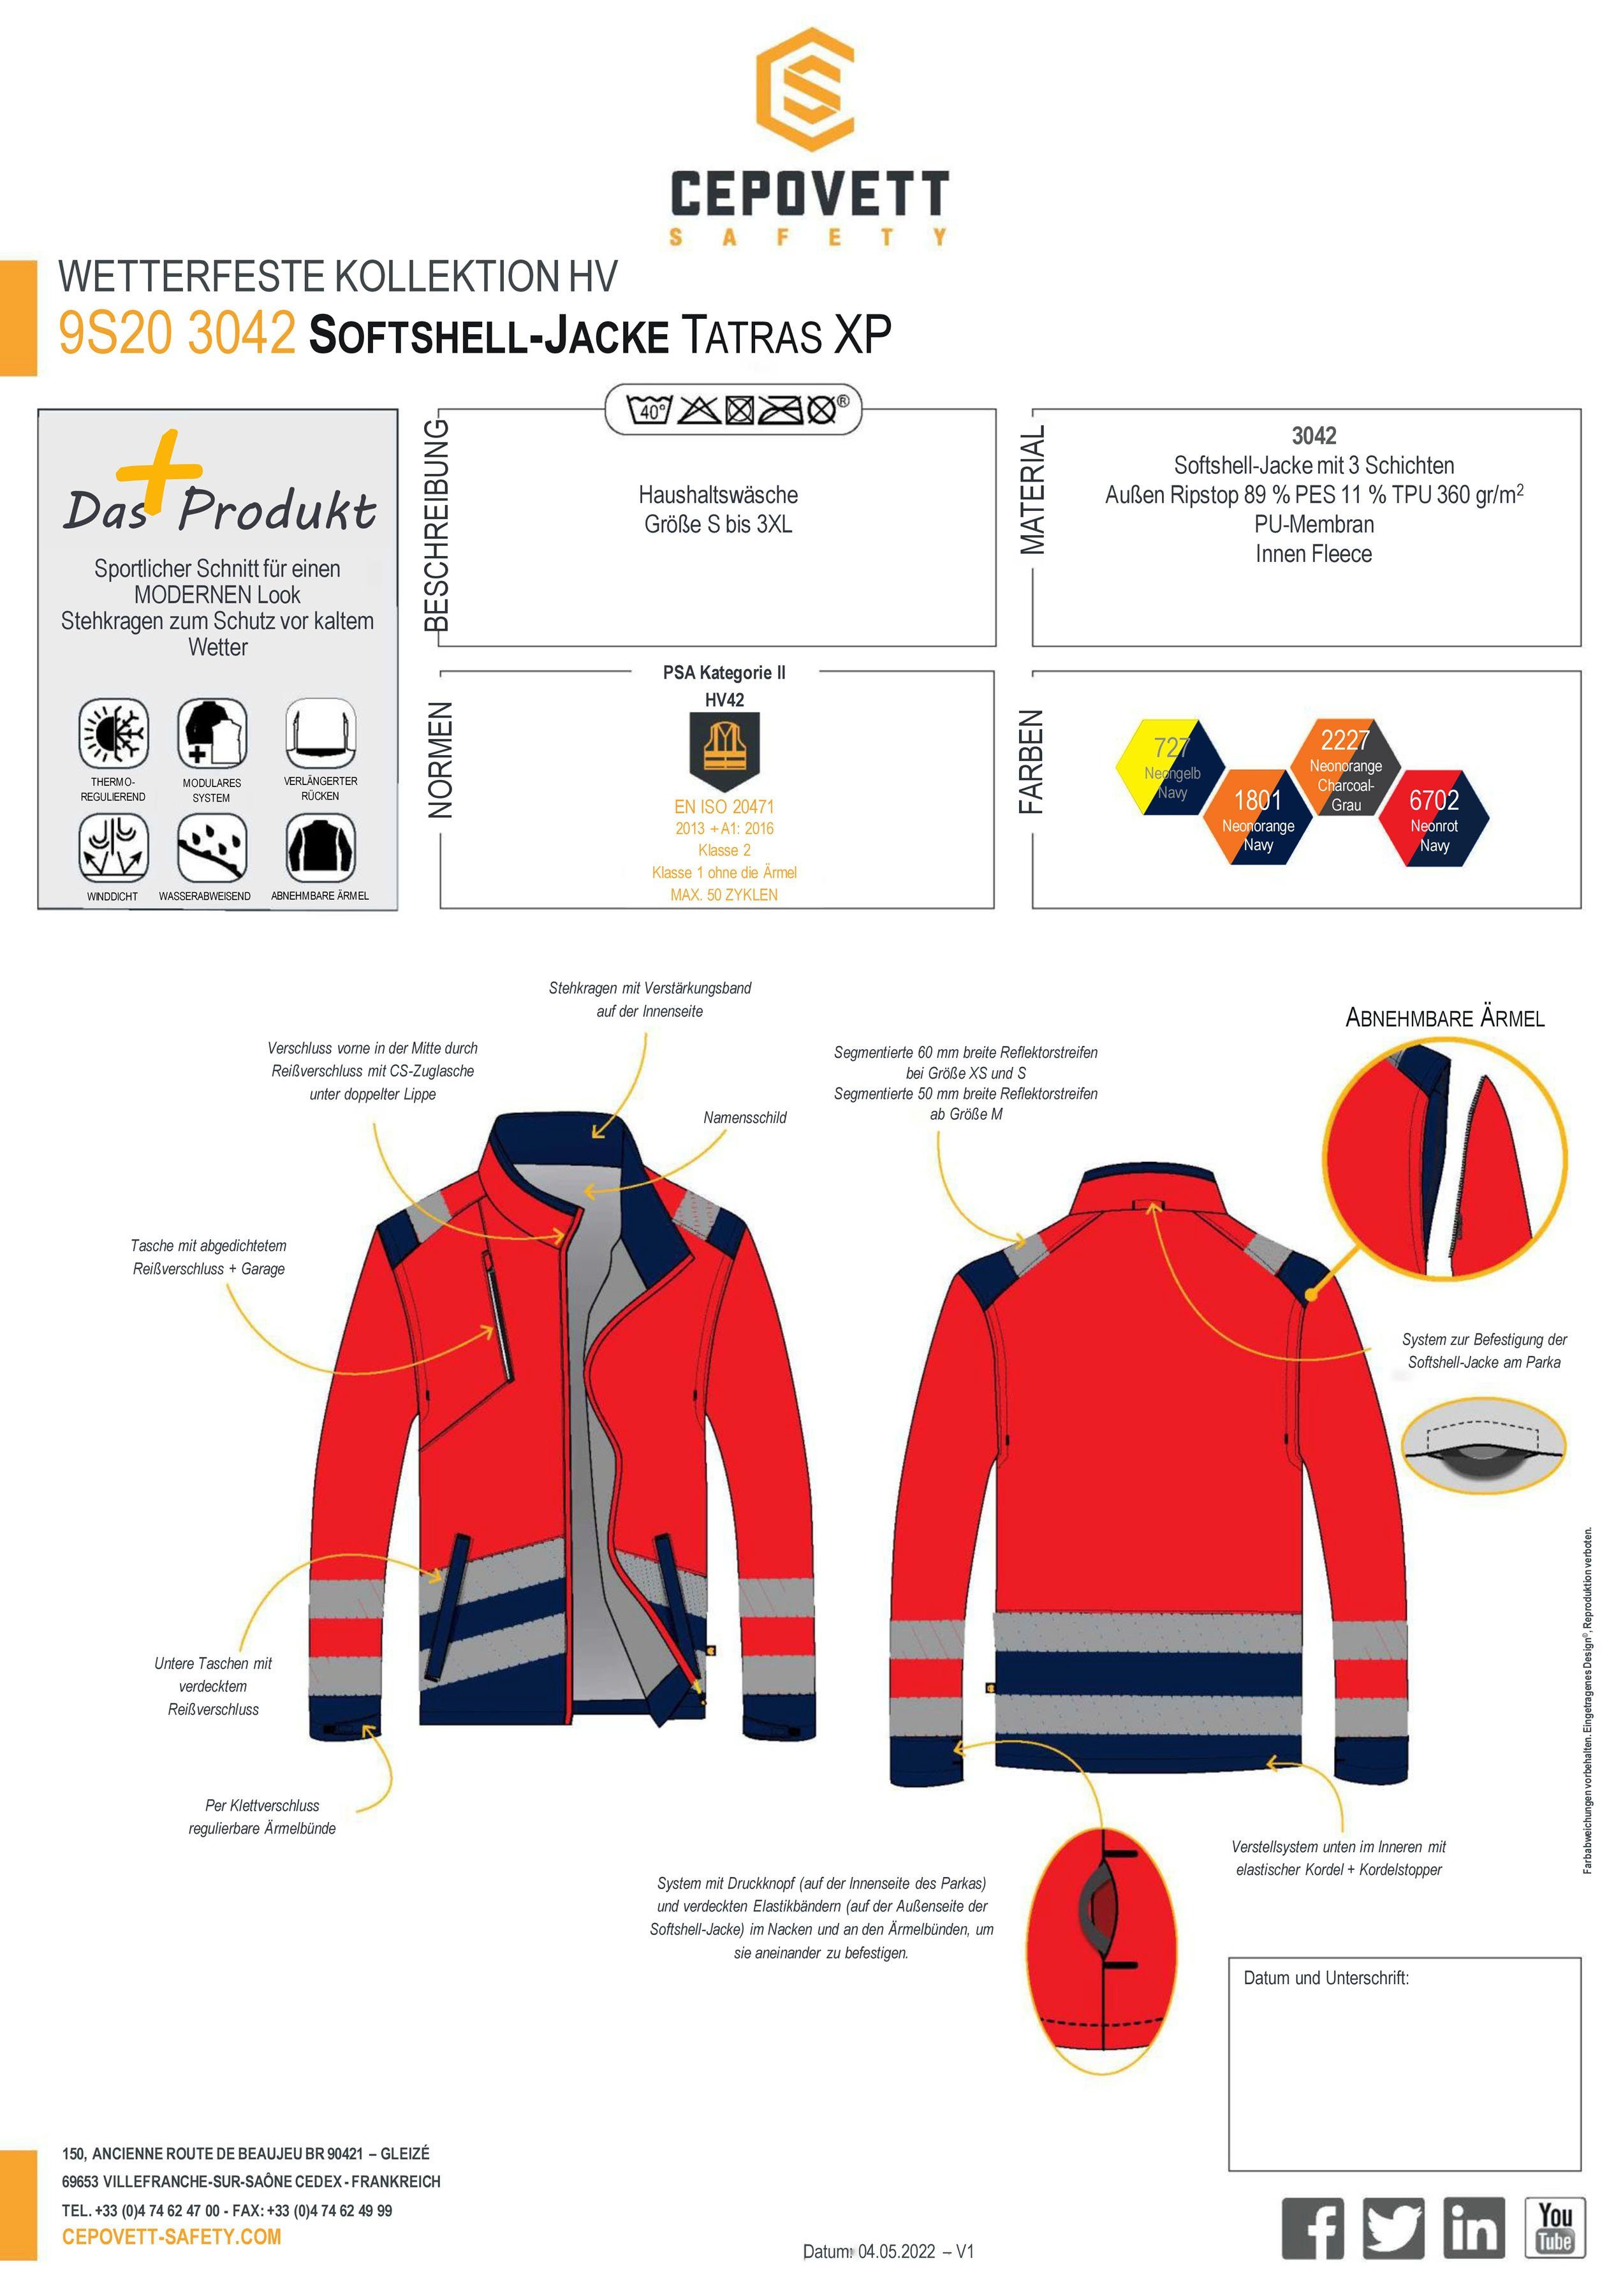 Modul'wear "Tatras Softshelljacke NAVY wasserabweisend, 3-in1, XP" Hochsichtbar / Unisex ROT Warnschutz, Cepovett FLUO